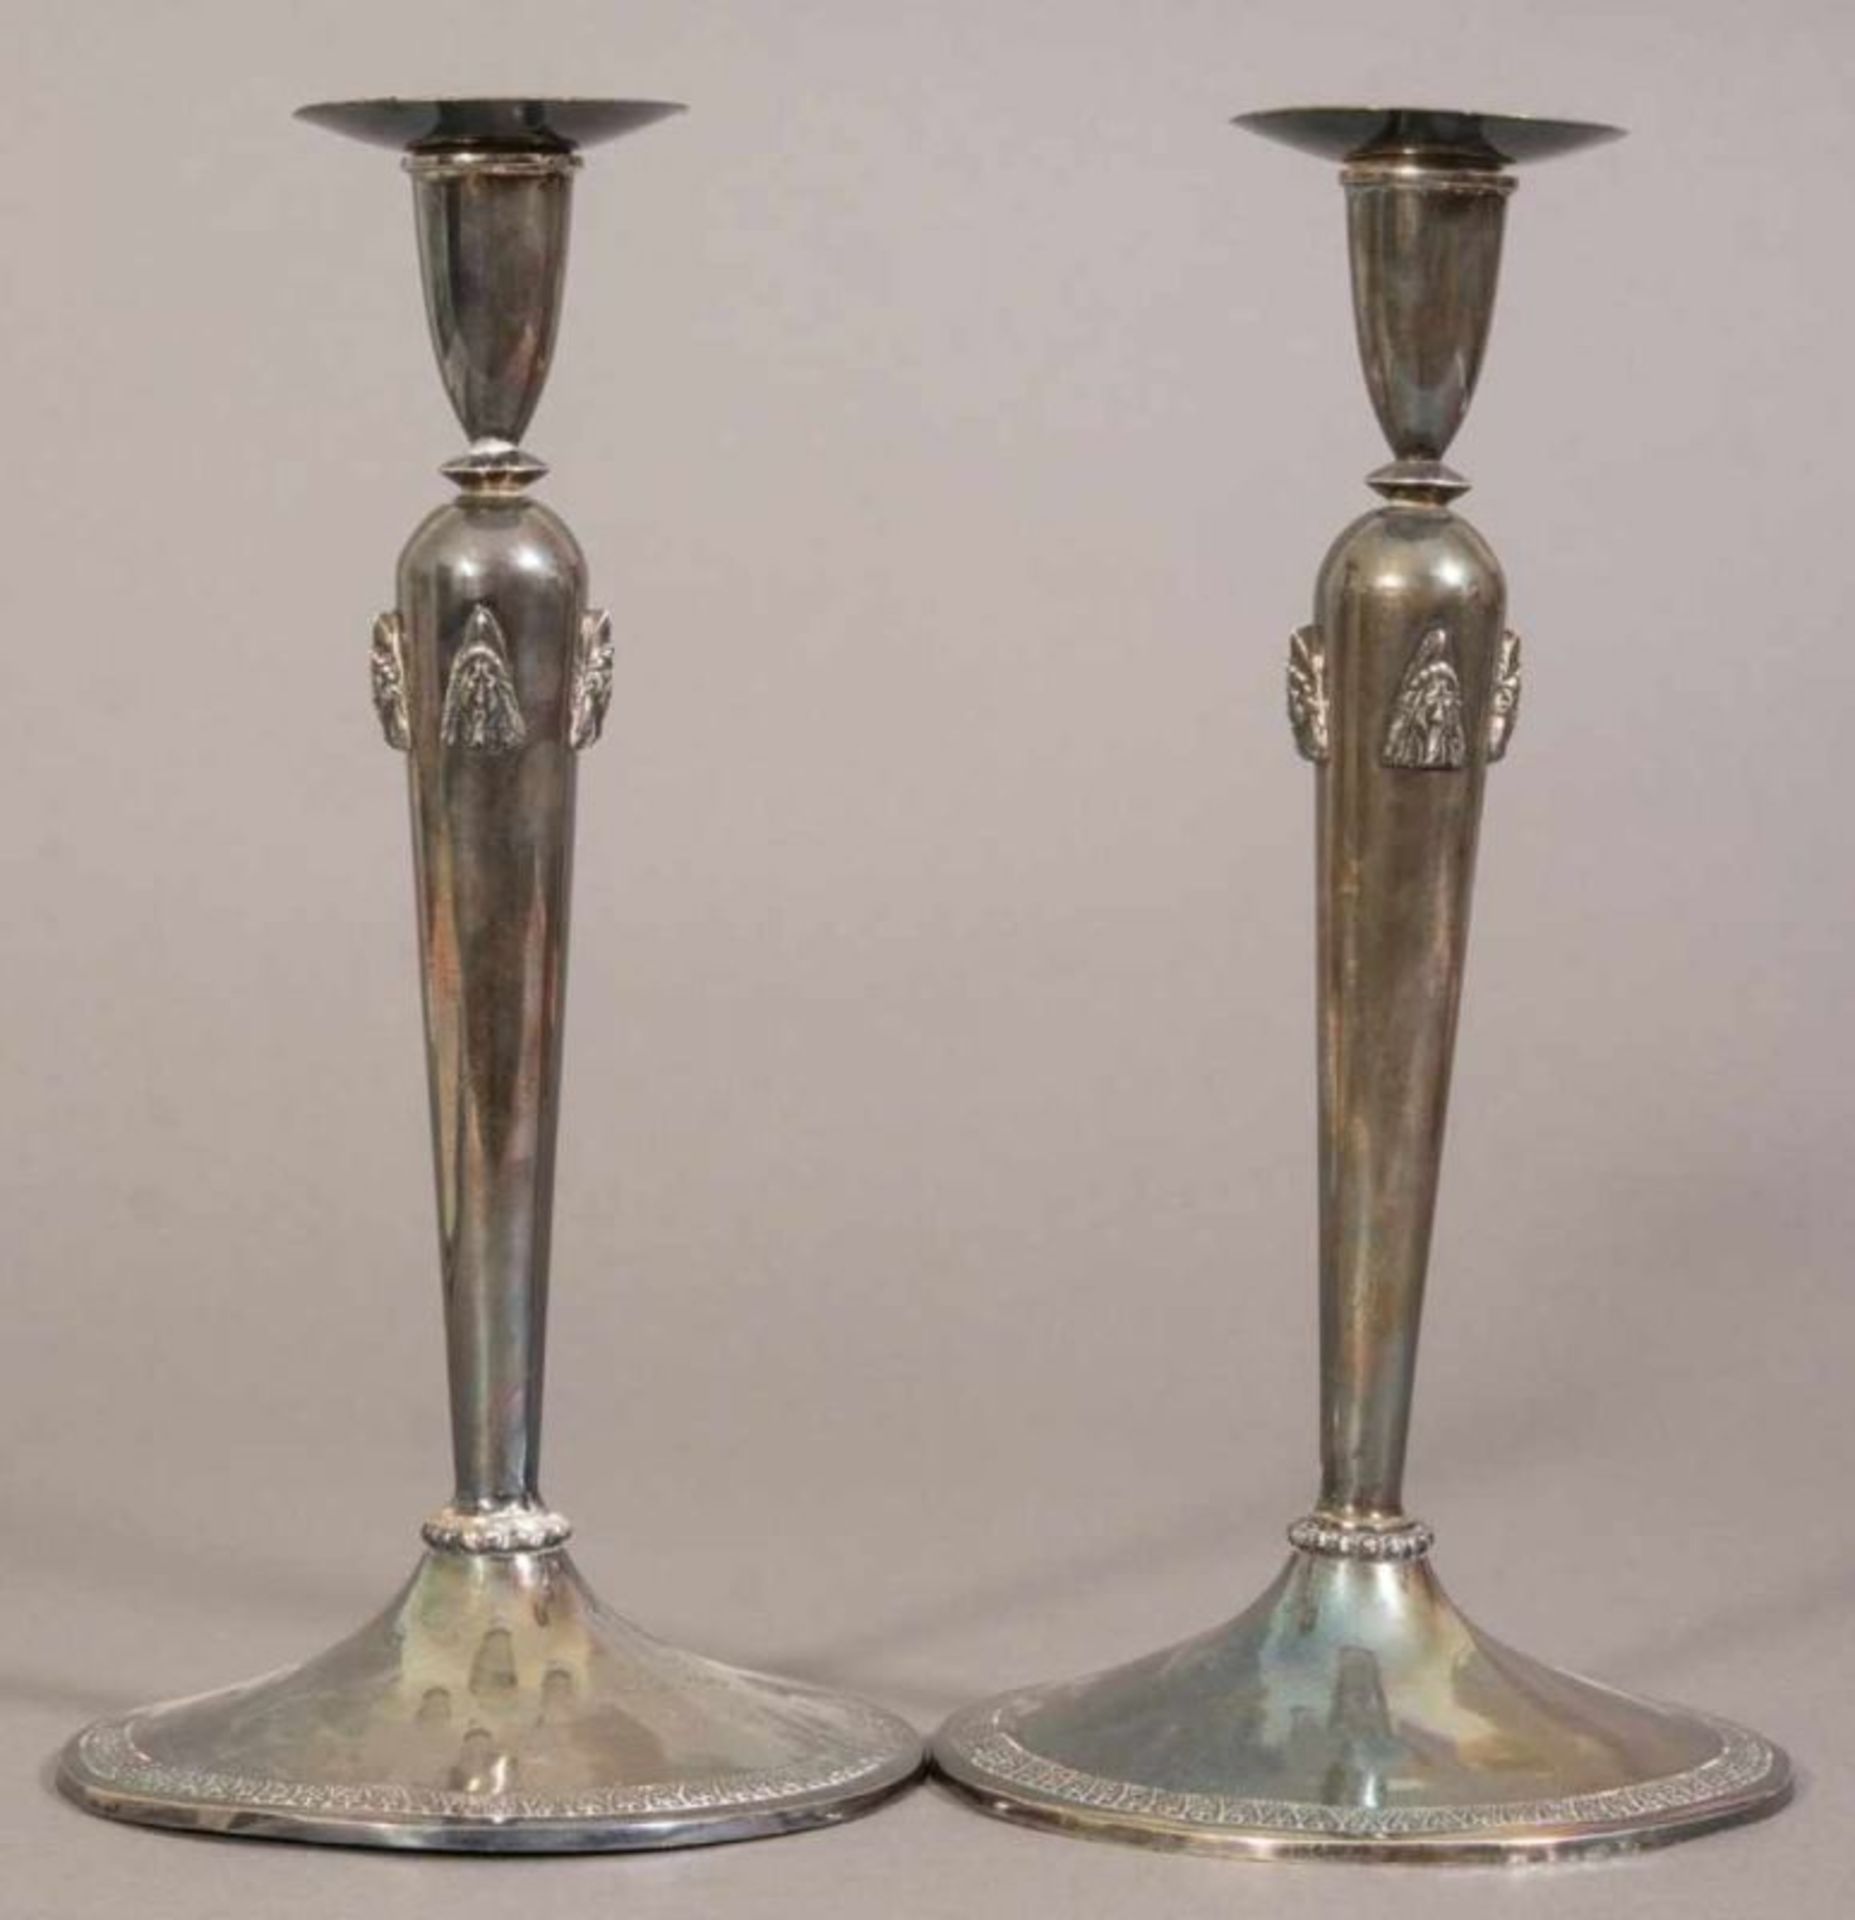 Paar einflammiger Kerzenleuchter, Silber, konischer Schaft mit je 3 plastischen Köpfen. Genua um